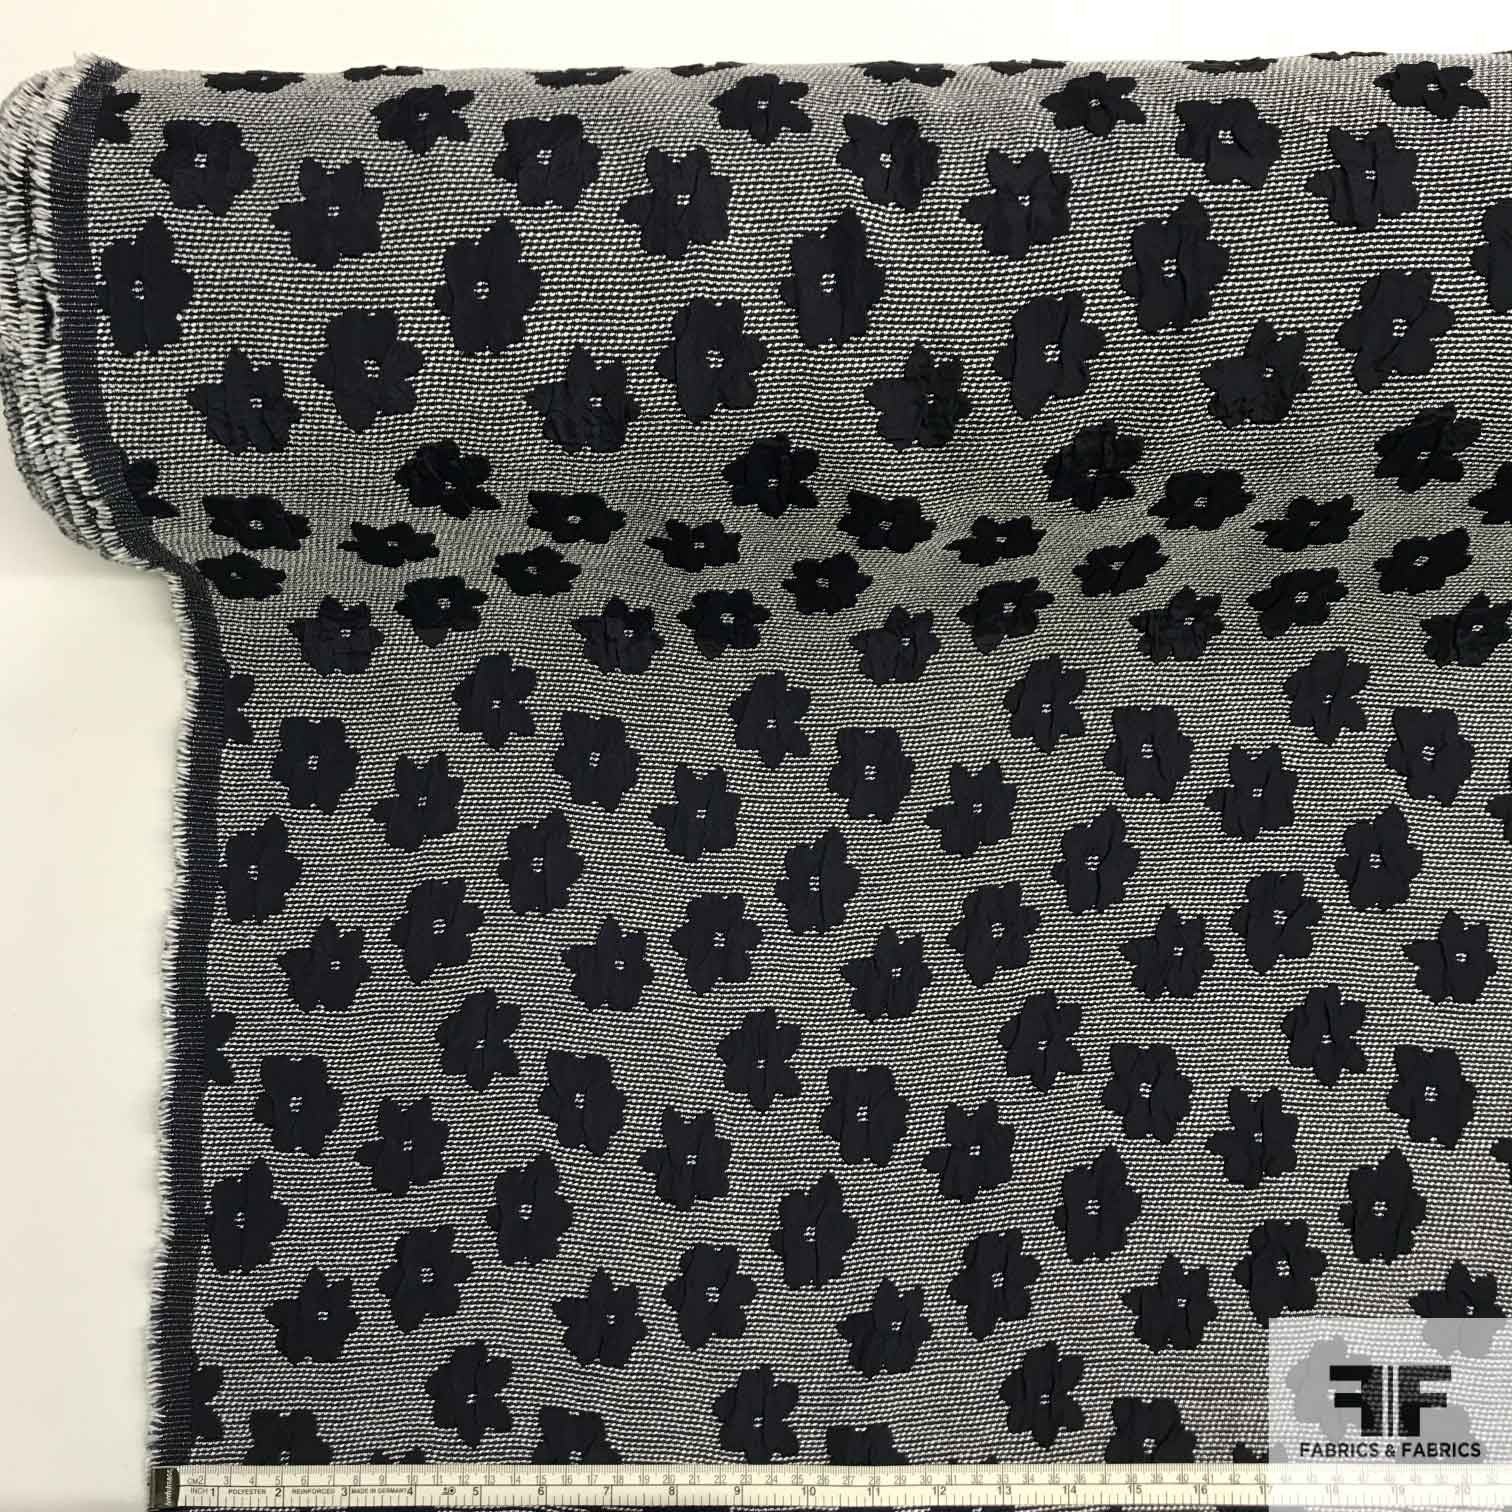 Floral Brocade - Navy/White - Fabrics & Fabrics NY